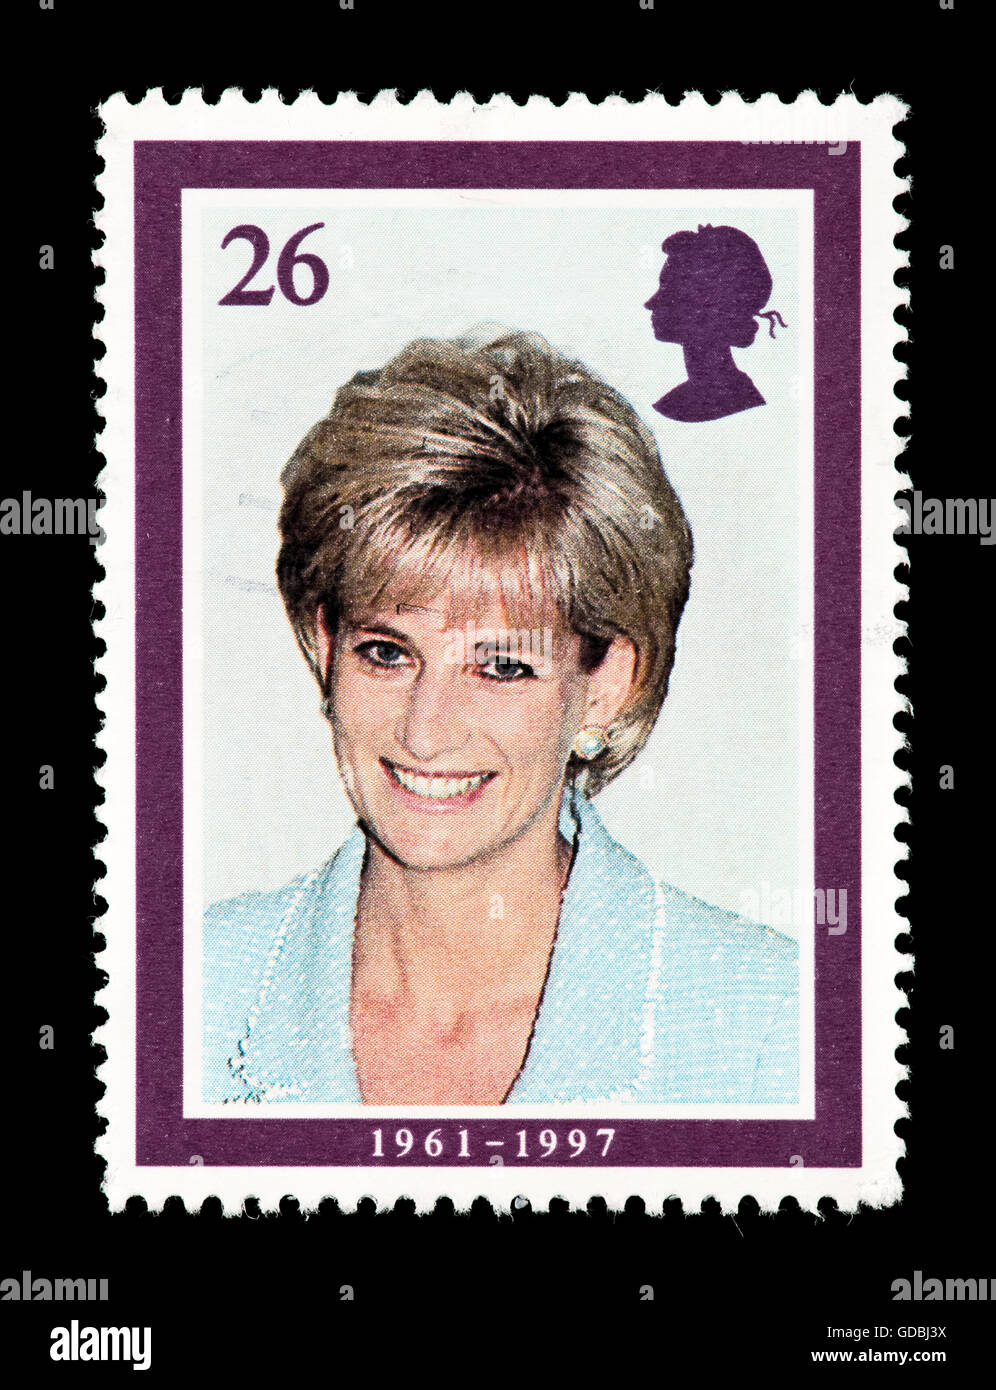 Rare Princess Diana Stamps